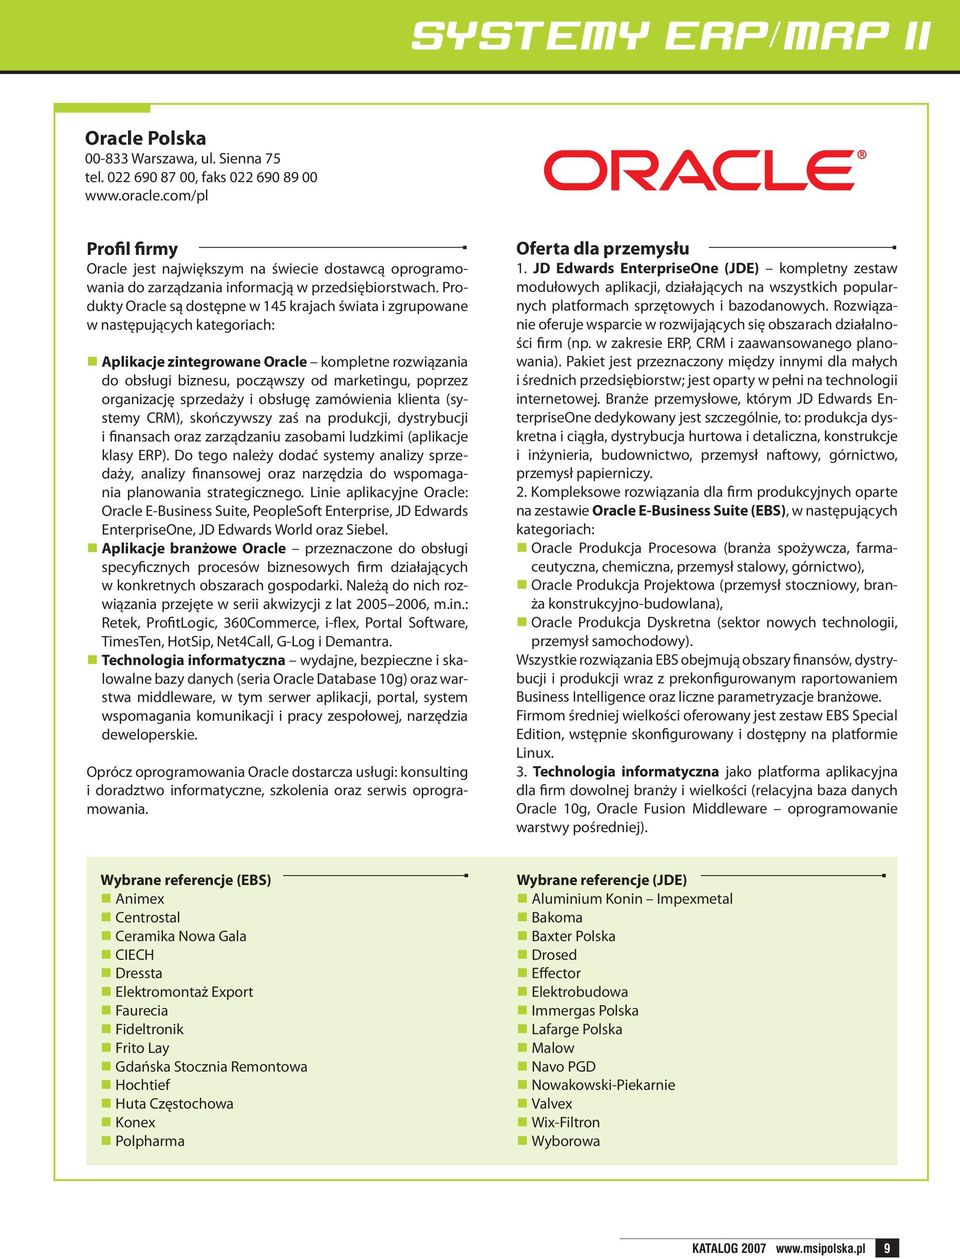 Produkty Oracle są dostępne w 145 krajach świata i zgrupowane w następujących kategoriach: Aplikacje zintegrowane Oracle kompletne rozwiązania do obsługi biznesu, począwszy od marketingu, poprzez